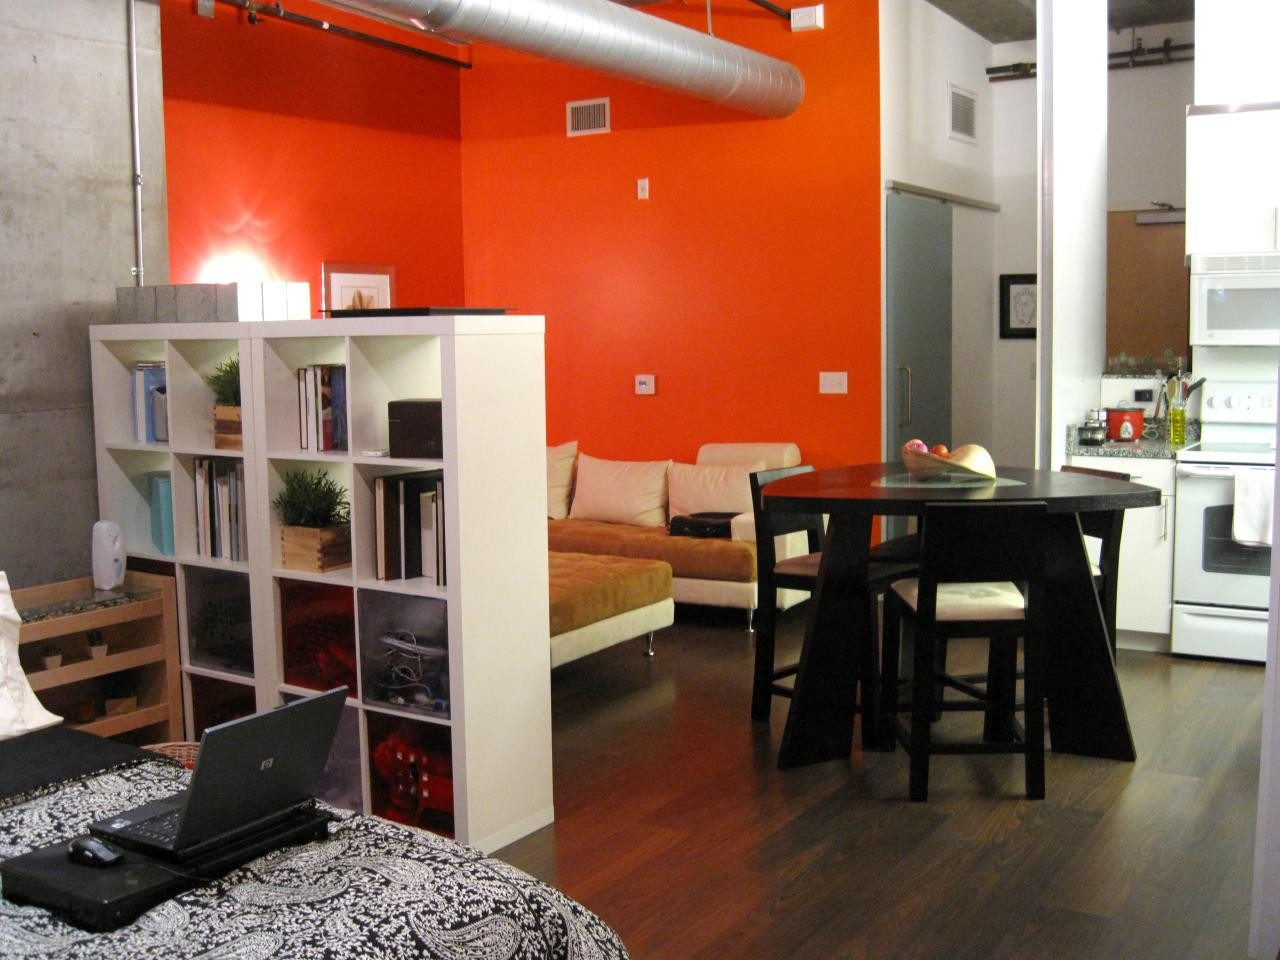 Studio Apartment Living Room Ideas
 Creative Small Studio Apartment Ideas with Space Saving